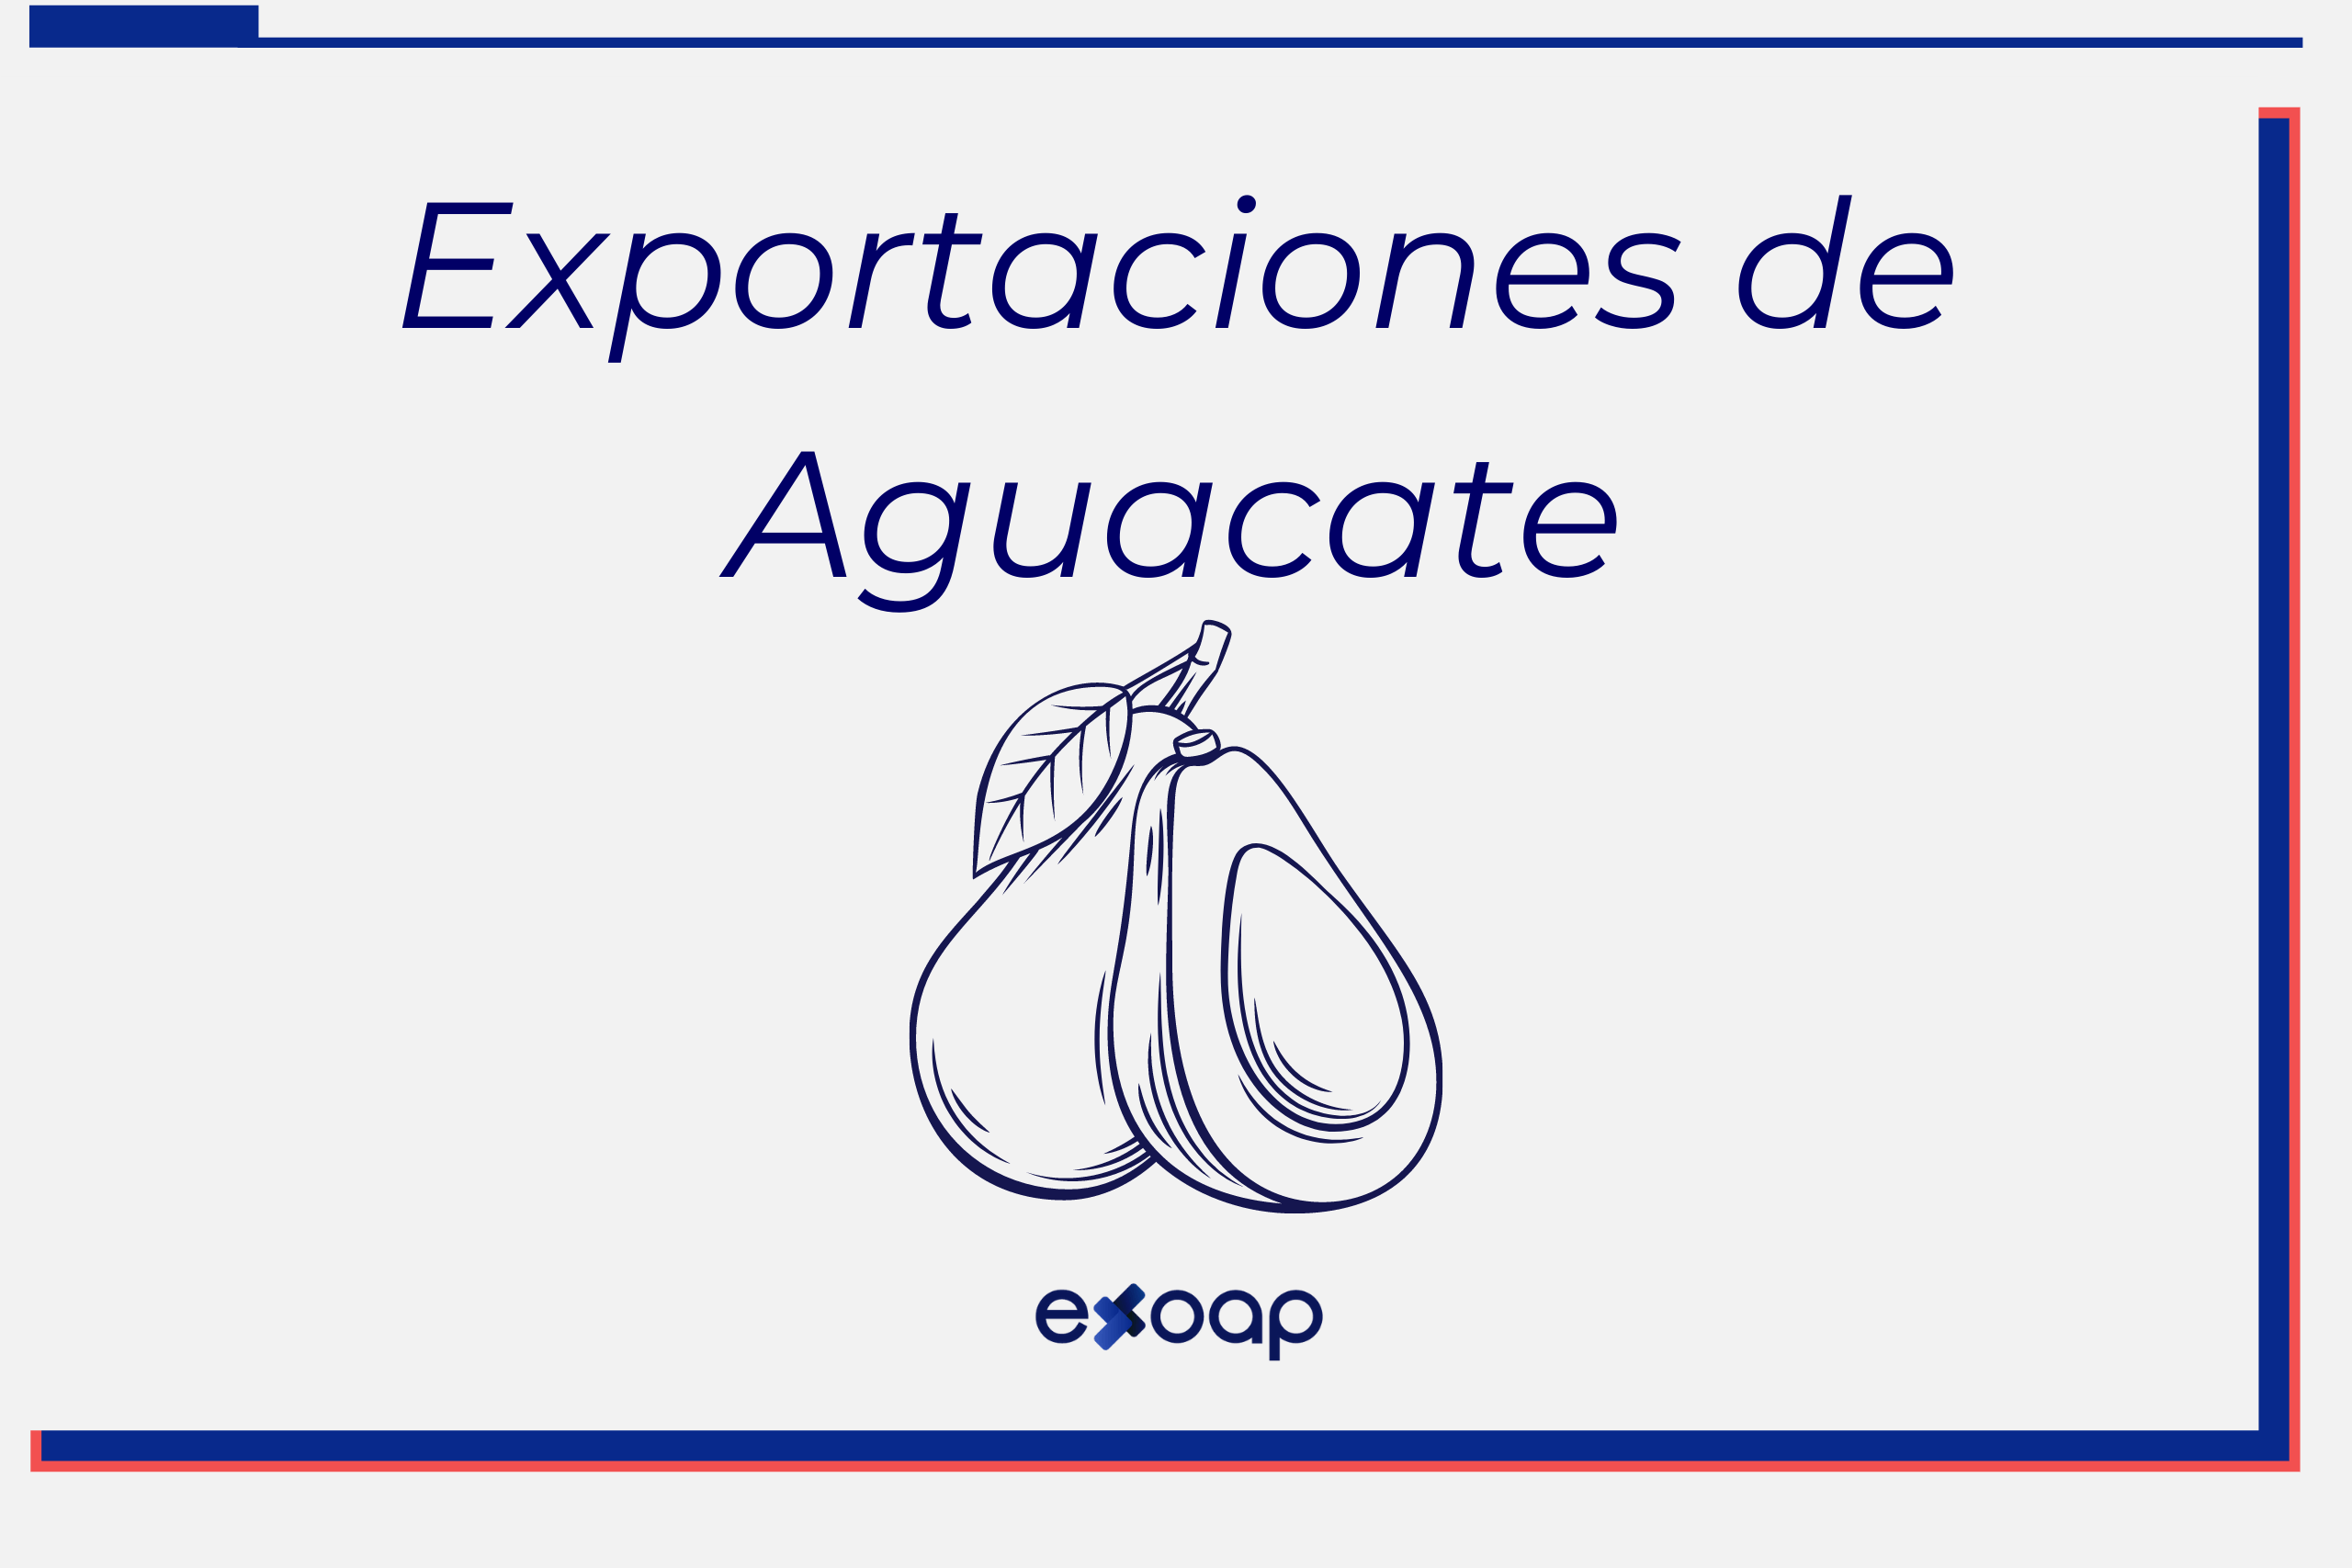 Exportaciones de Aguacate